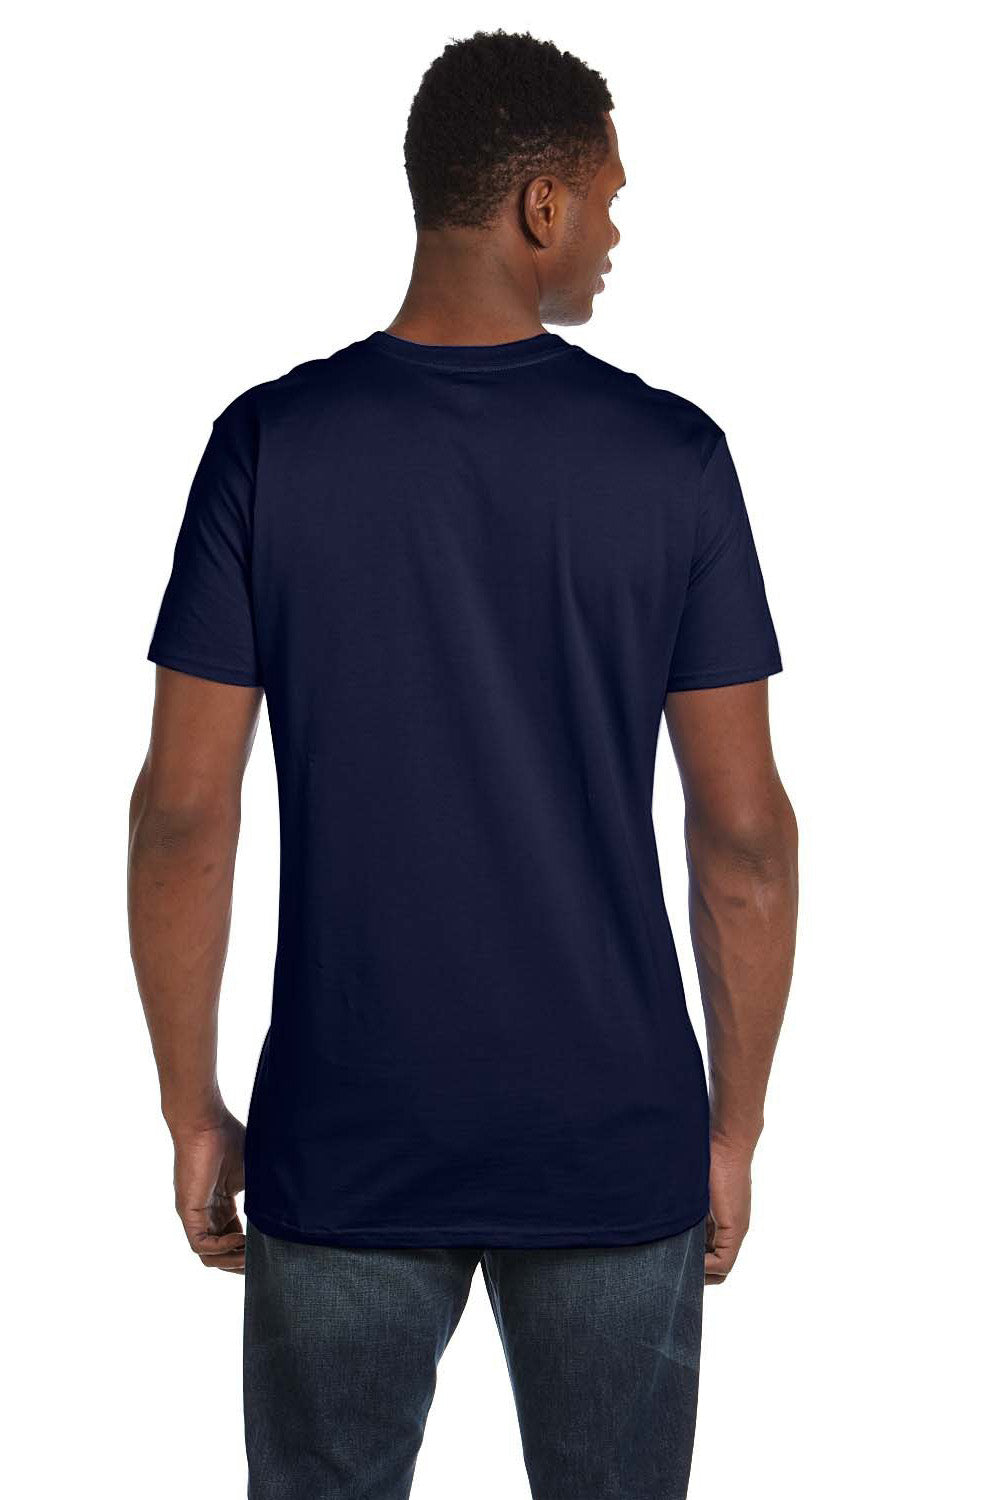 Hanes 498PT Mens Perfect-T PreTreat Short Sleeve Crewneck T-Shirt Navy Blue Back